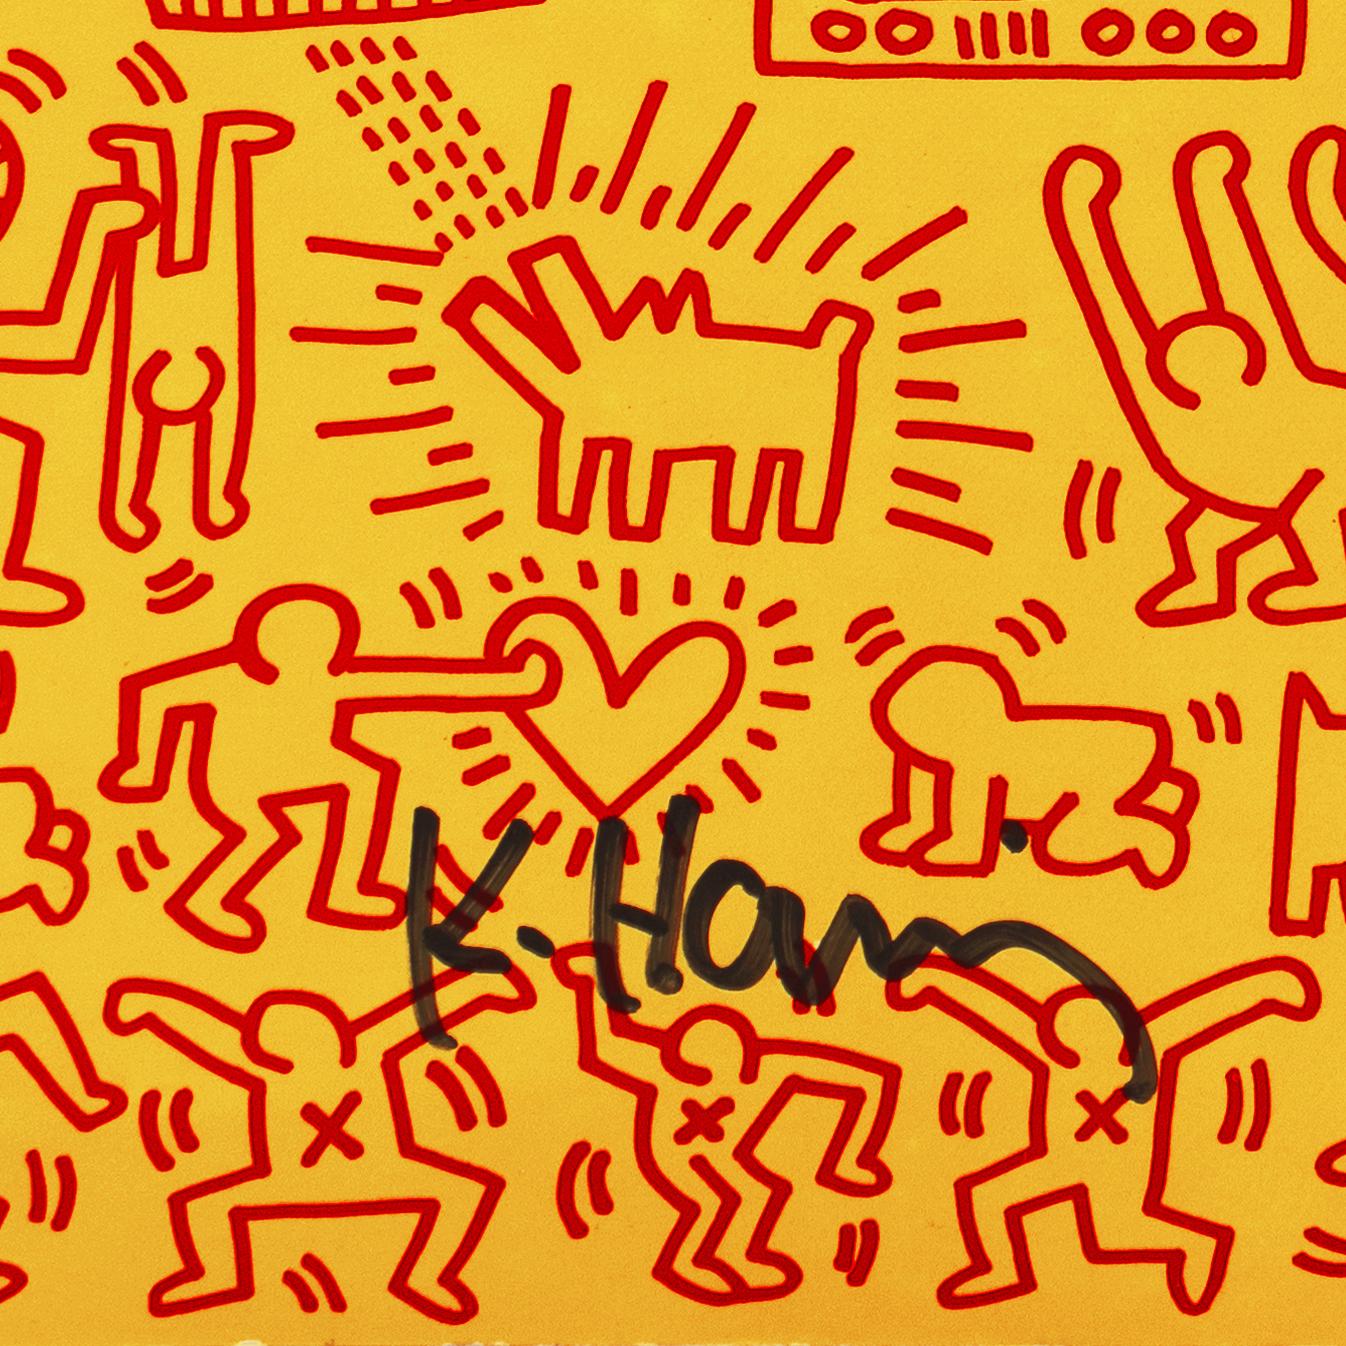 „Art in Transit“, handsigniert von Haring, Subway-Zeichnungen, New York, Pop Art (Pop-Art), Print, von Keith Haring